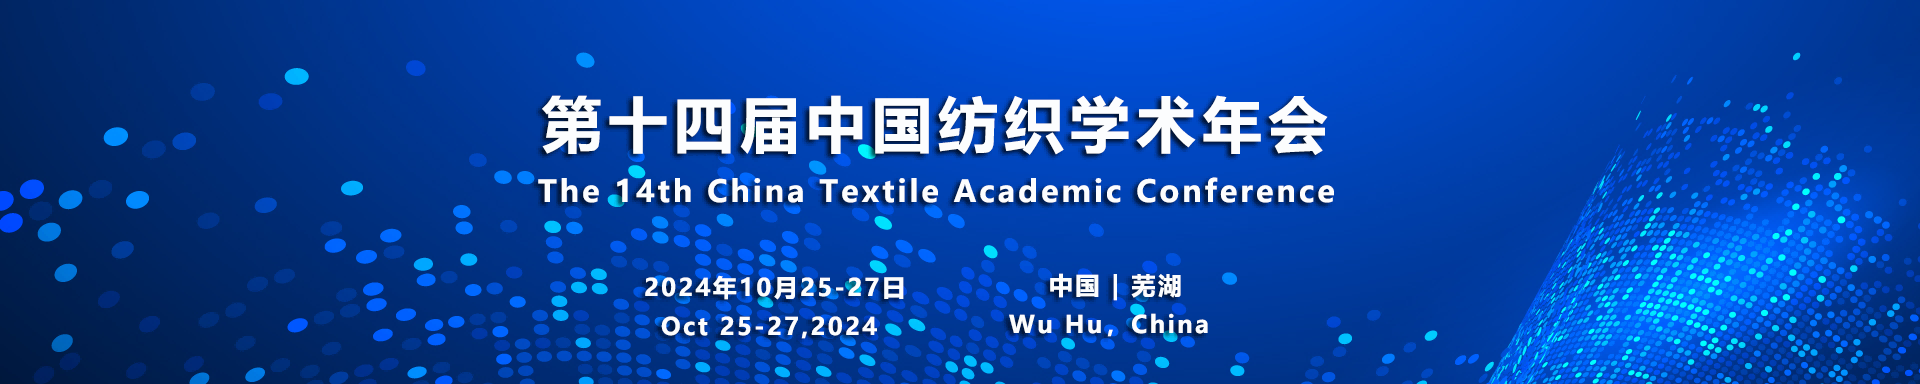 会议概况 - 第十四届中国纺织学术年会